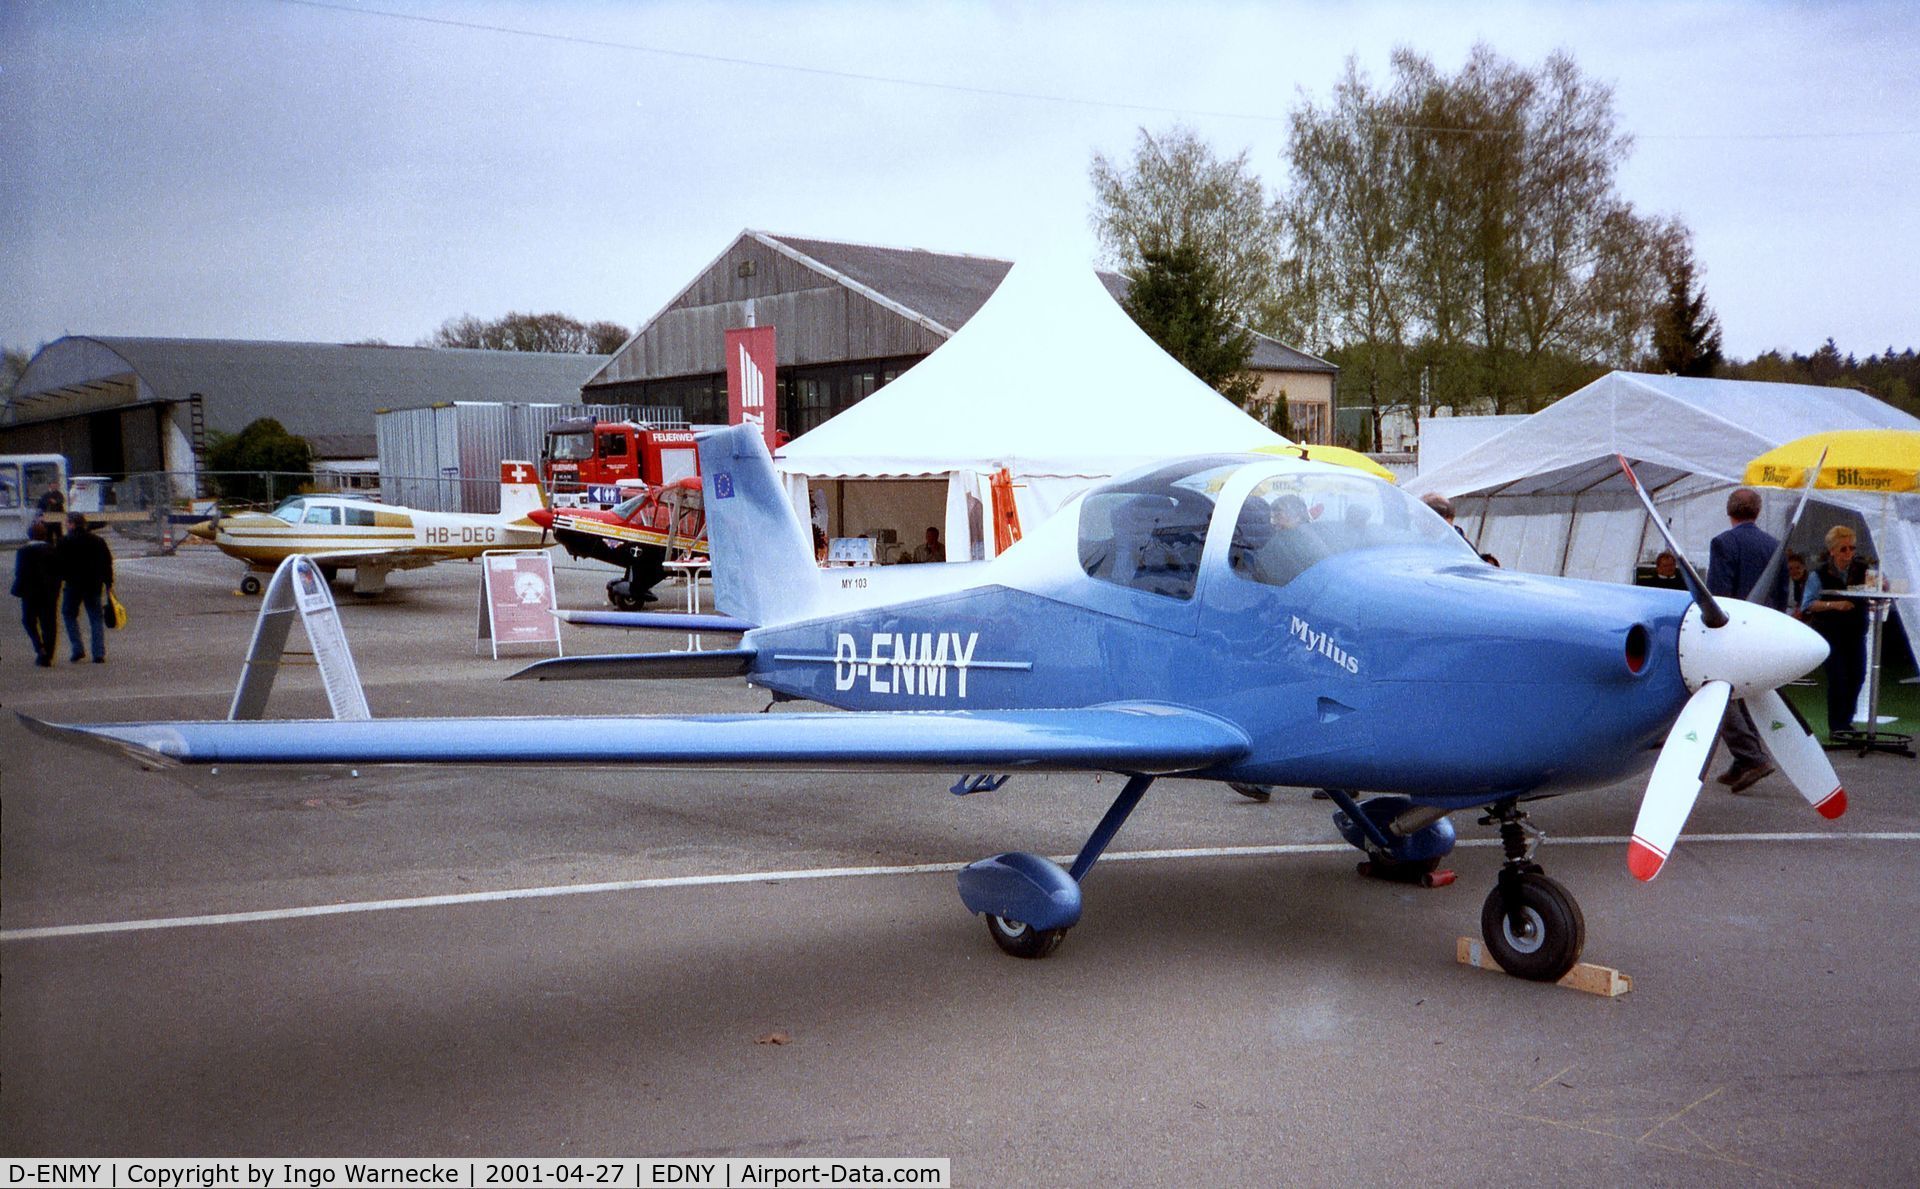 D-ENMY, 2001 Mylius My 103 Mistral C/N 01, Mylius MY-103 Mistral (first series production aircraft, still unflown) at the AERO 2001, Friedrichshafen